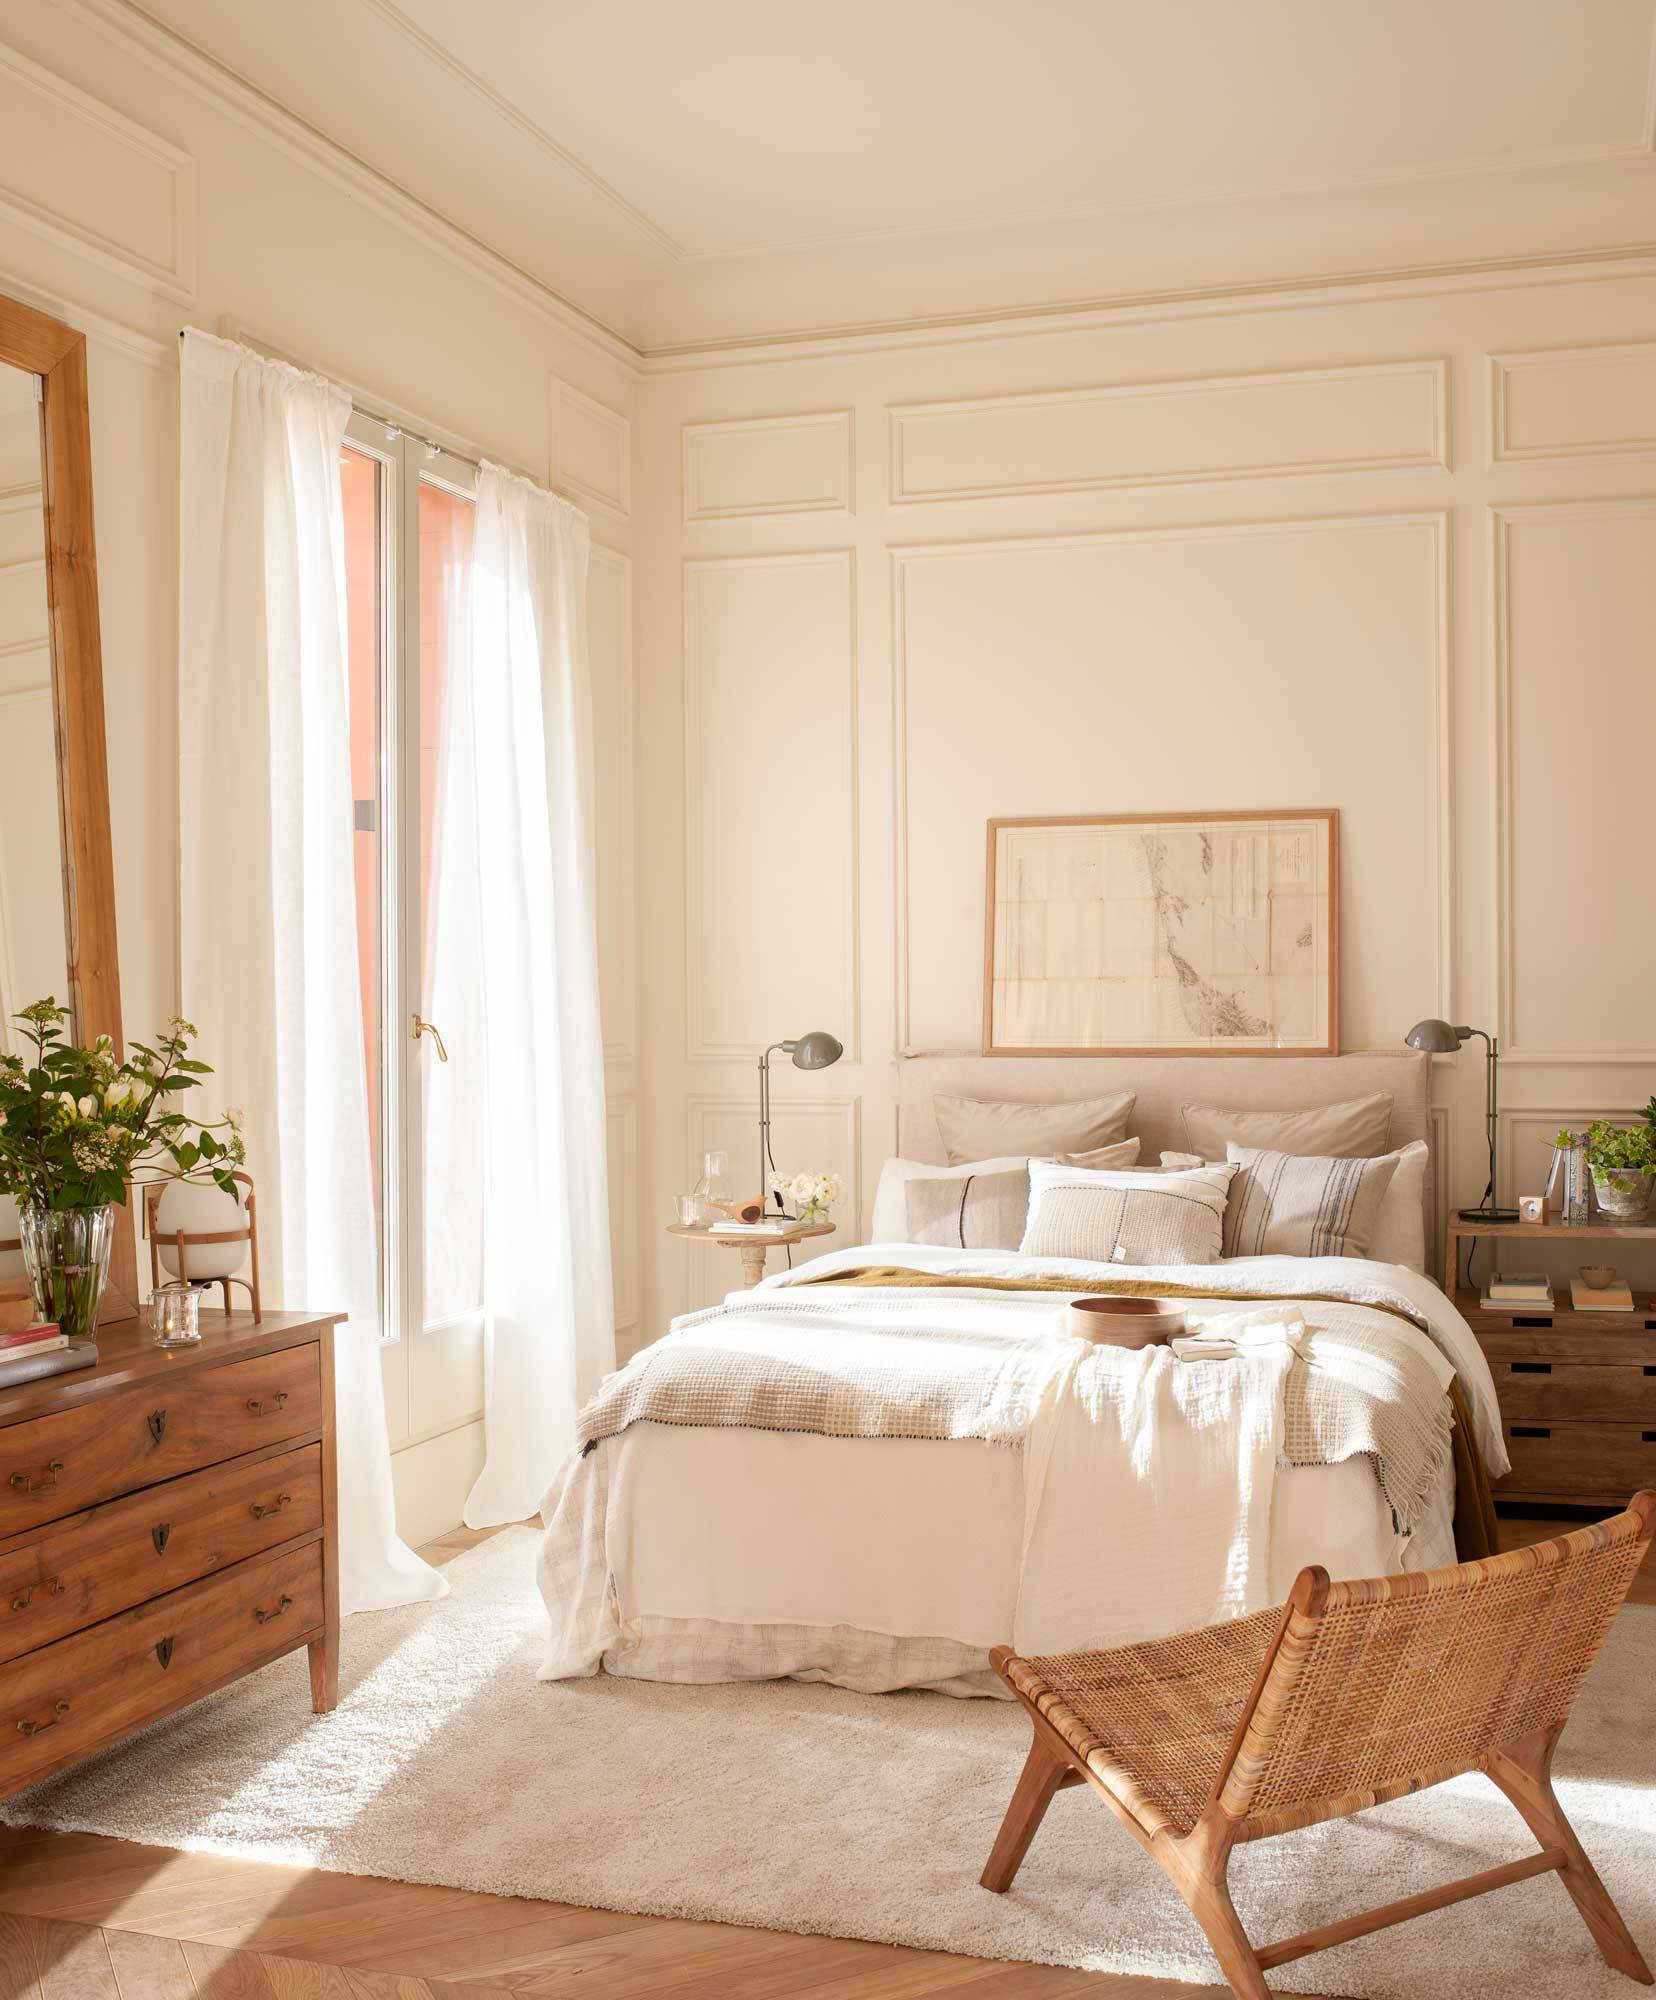 Dormitorio clásico con molduras en la pared y muebkes de madera. 